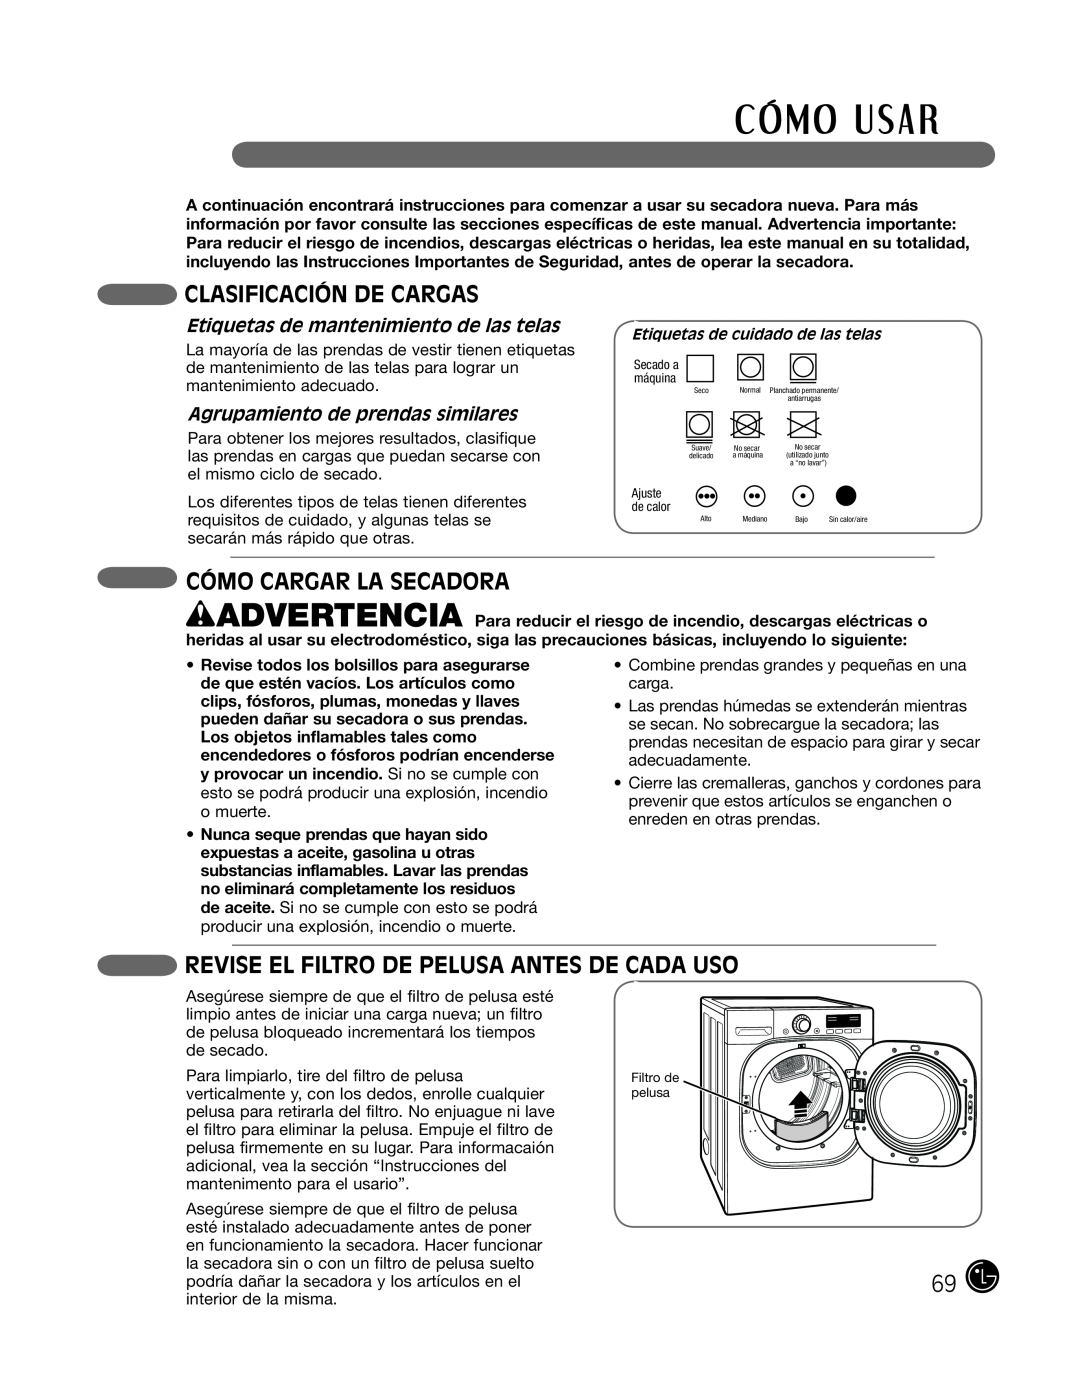 LG Electronics P154 manual Clasificación De Cargas, CÓMO CARGAR la secadora, Revise El Filtro De Pelusa Antes De Cada Uso 